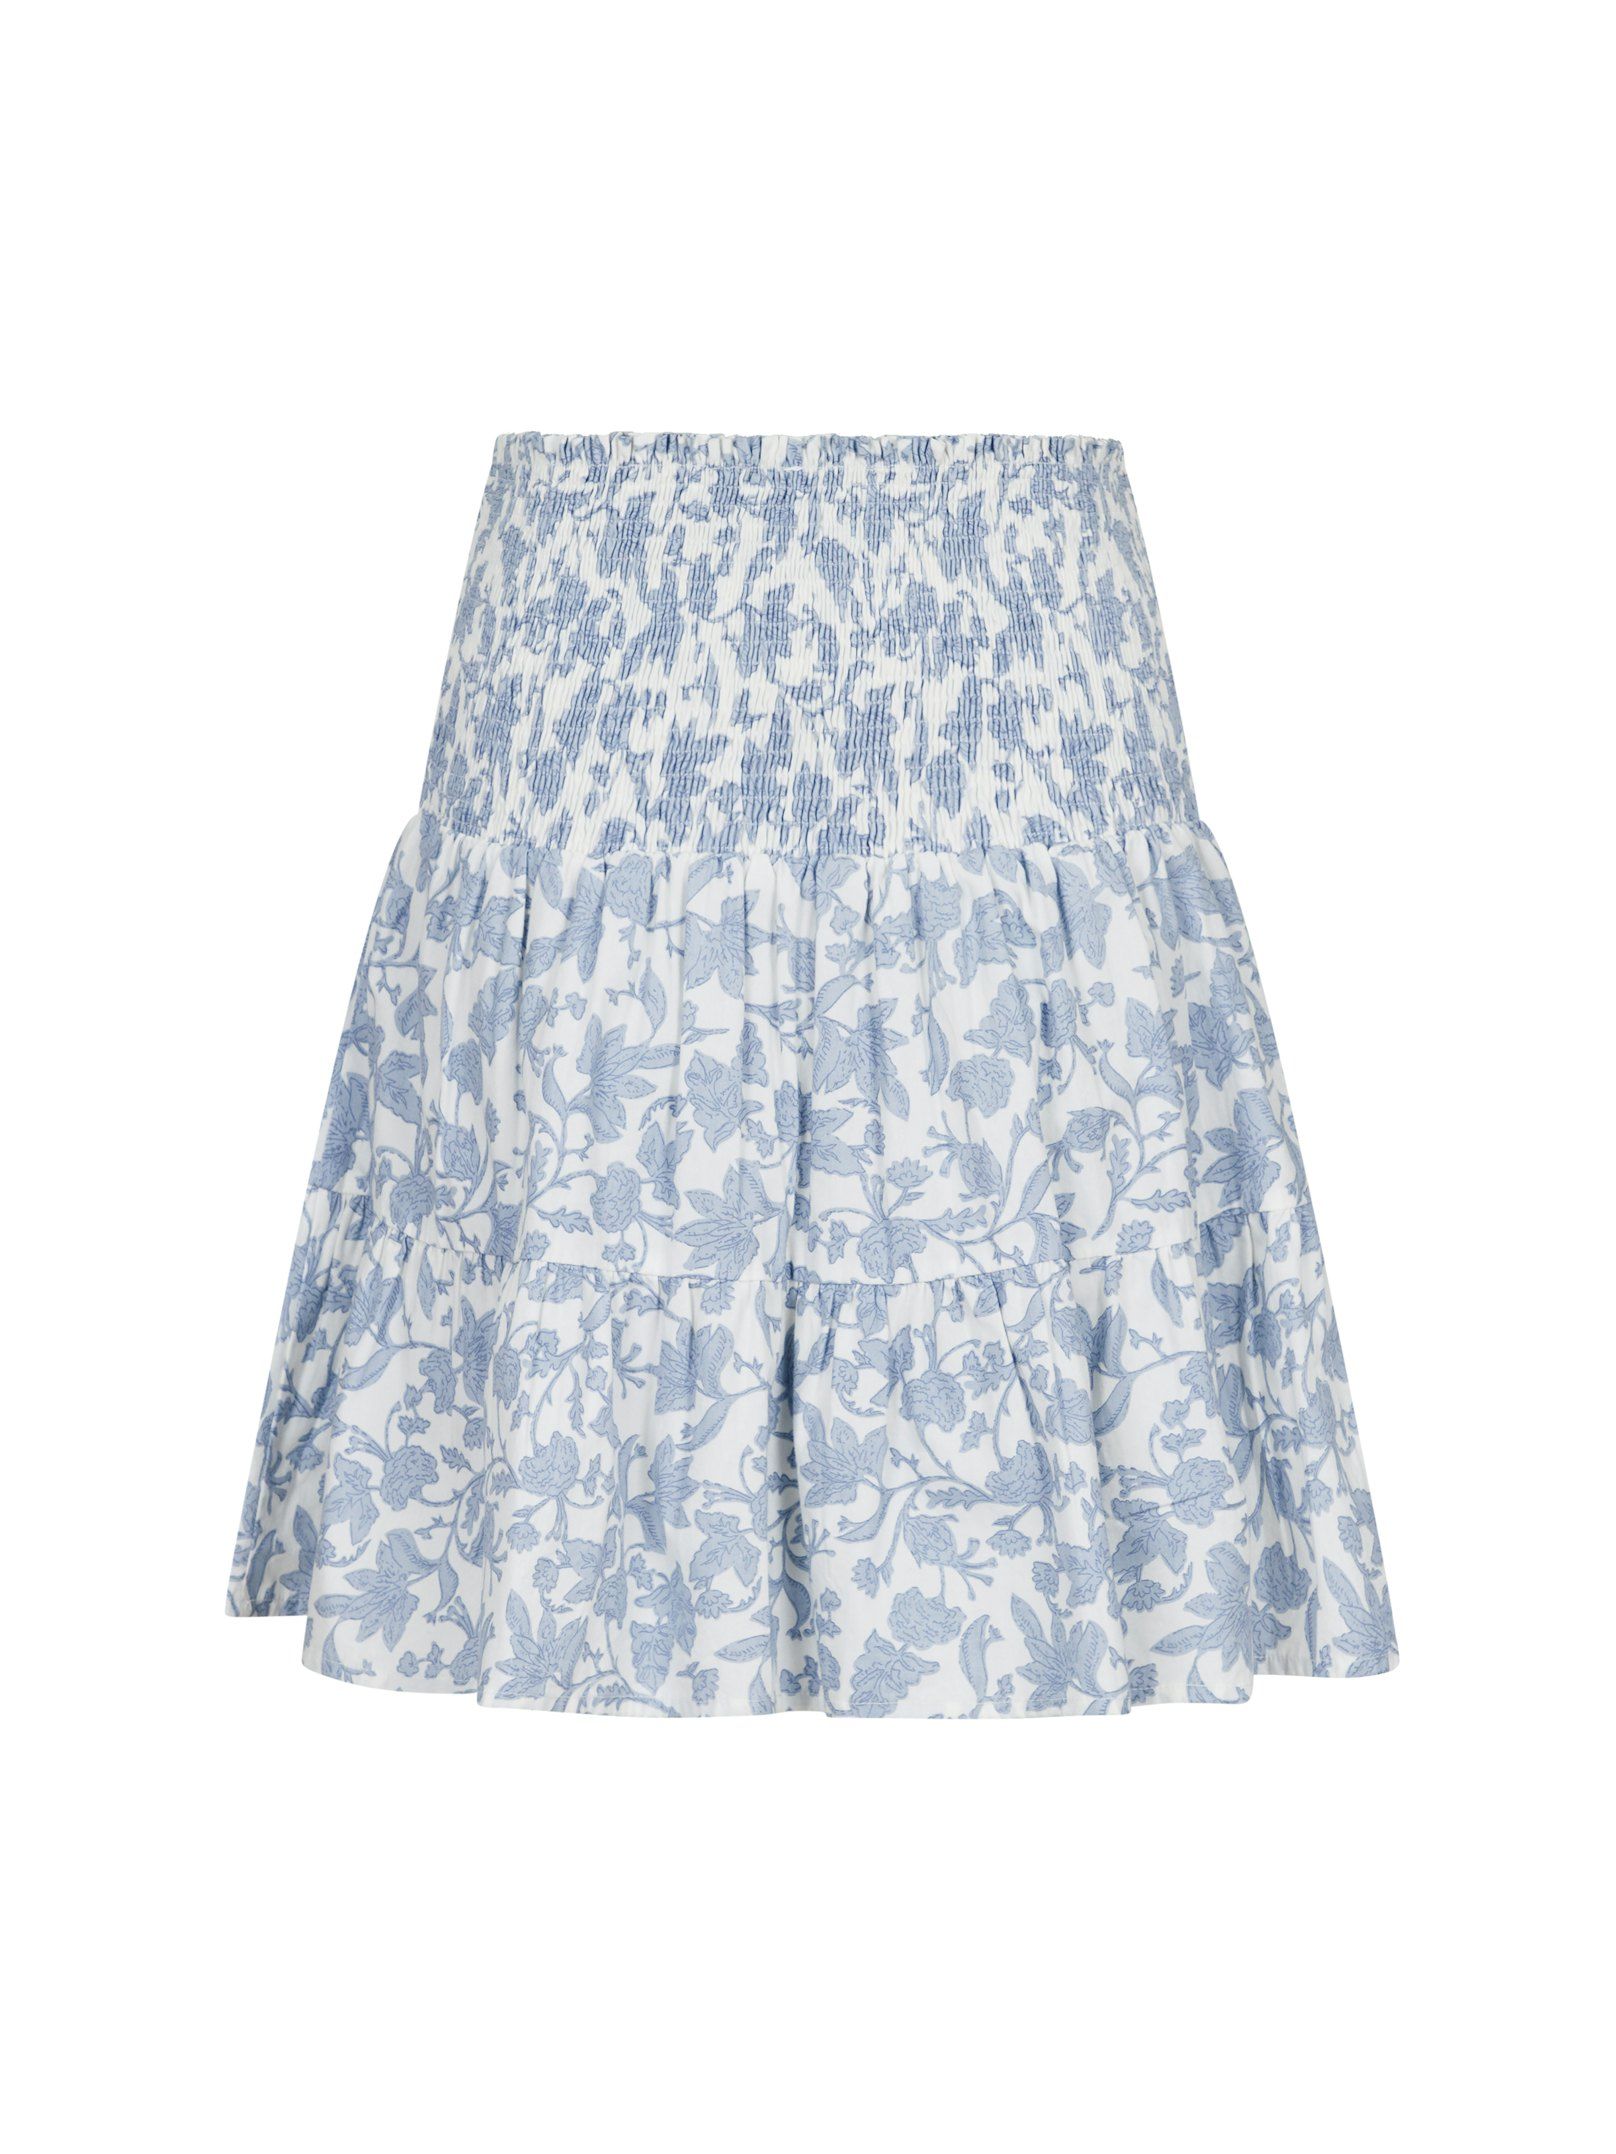 Cordova Garden Elegance Skirt Light Blue